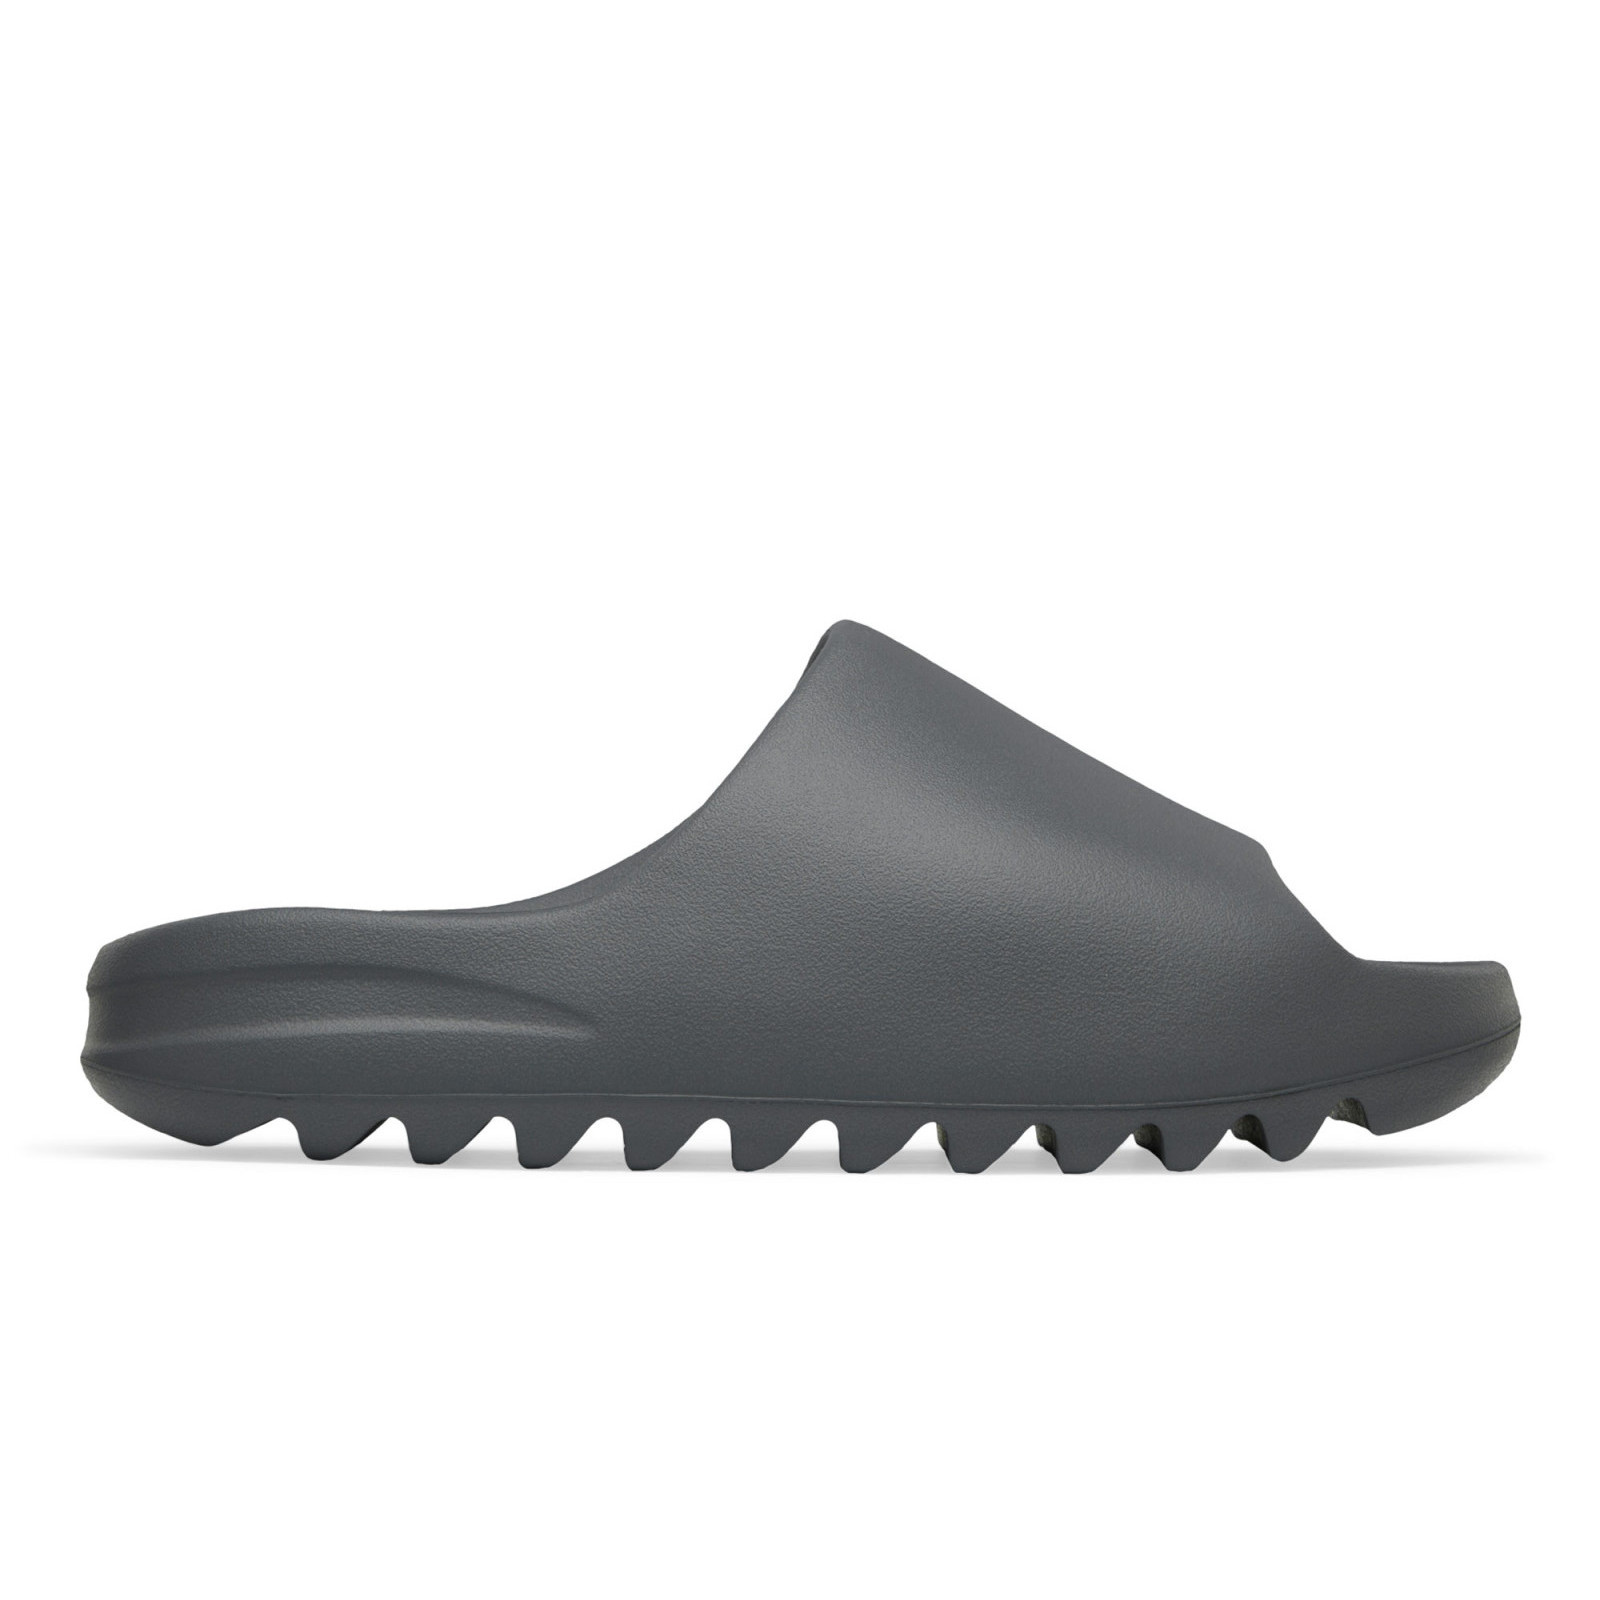 Adidas Yeezy Slide
« Slate Grey »